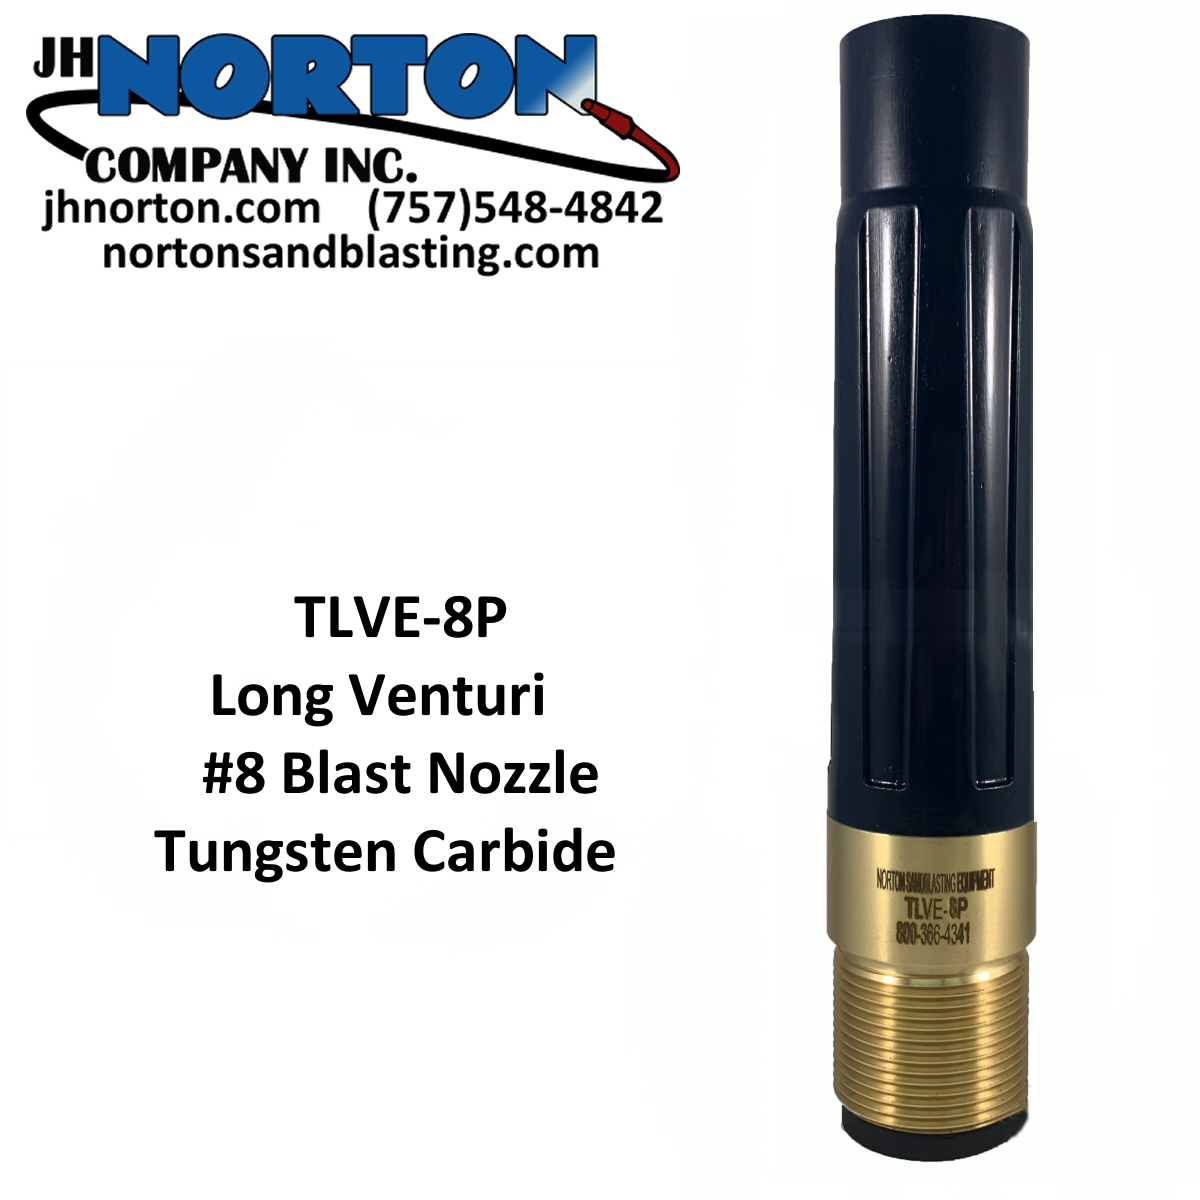 Size 8 Blast Nozzle Long Venturi Tungsten Carbide Poly Jacket